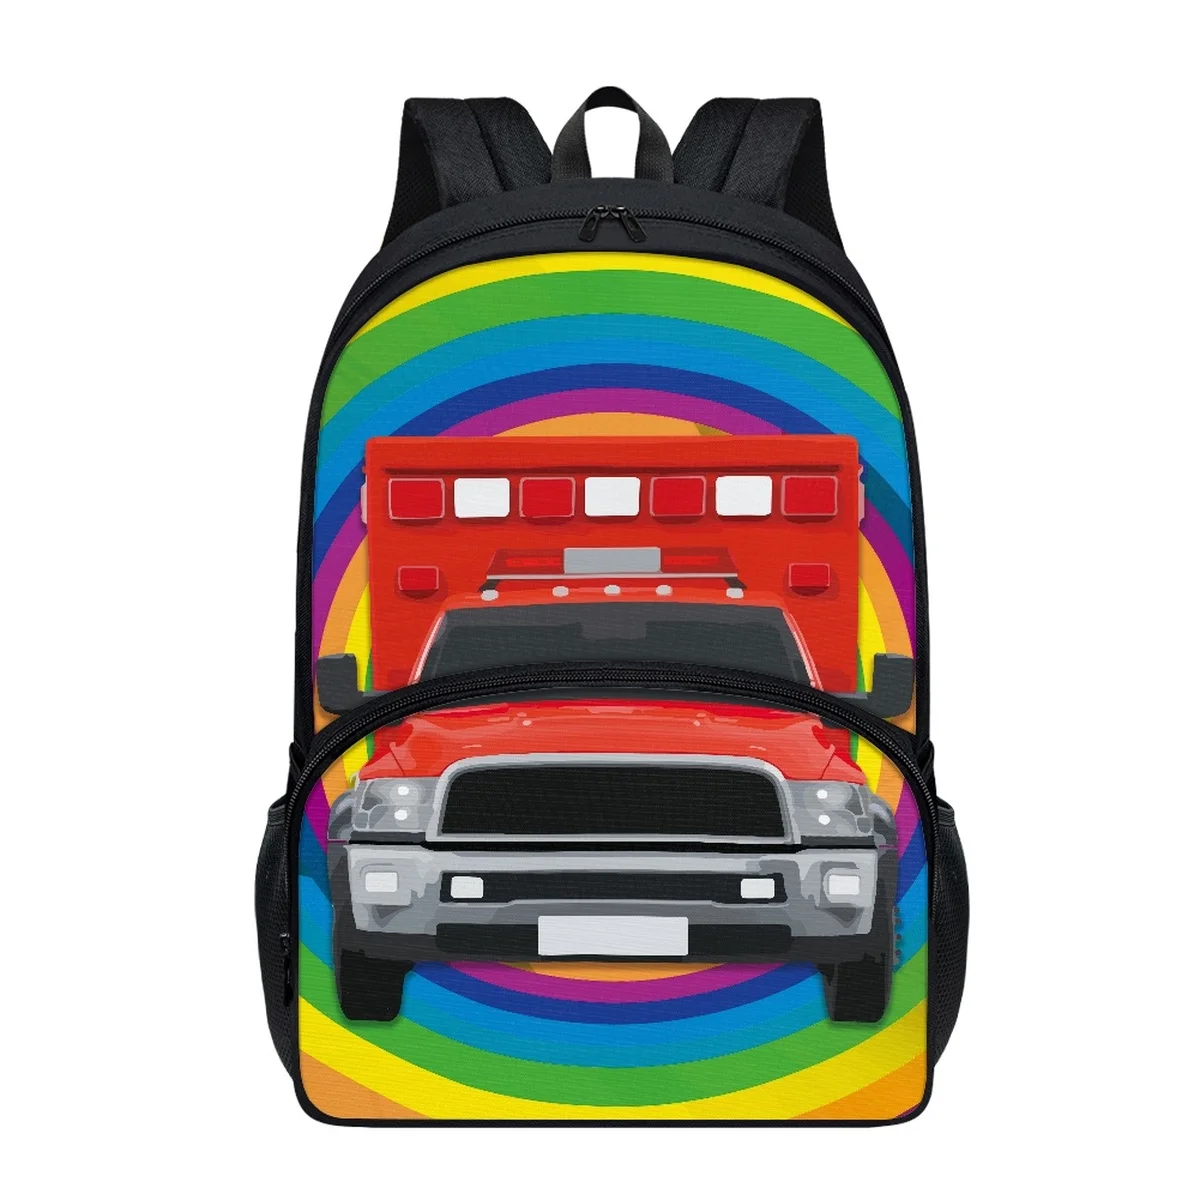 FORUDESIGNS/ Школьные сумки с рисунком радужного мультяшного автомобиля, рюкзаки для учащихся начальной школы, простые водонепроницаемые сумки для книг, разнообразные сумки Изображение 1